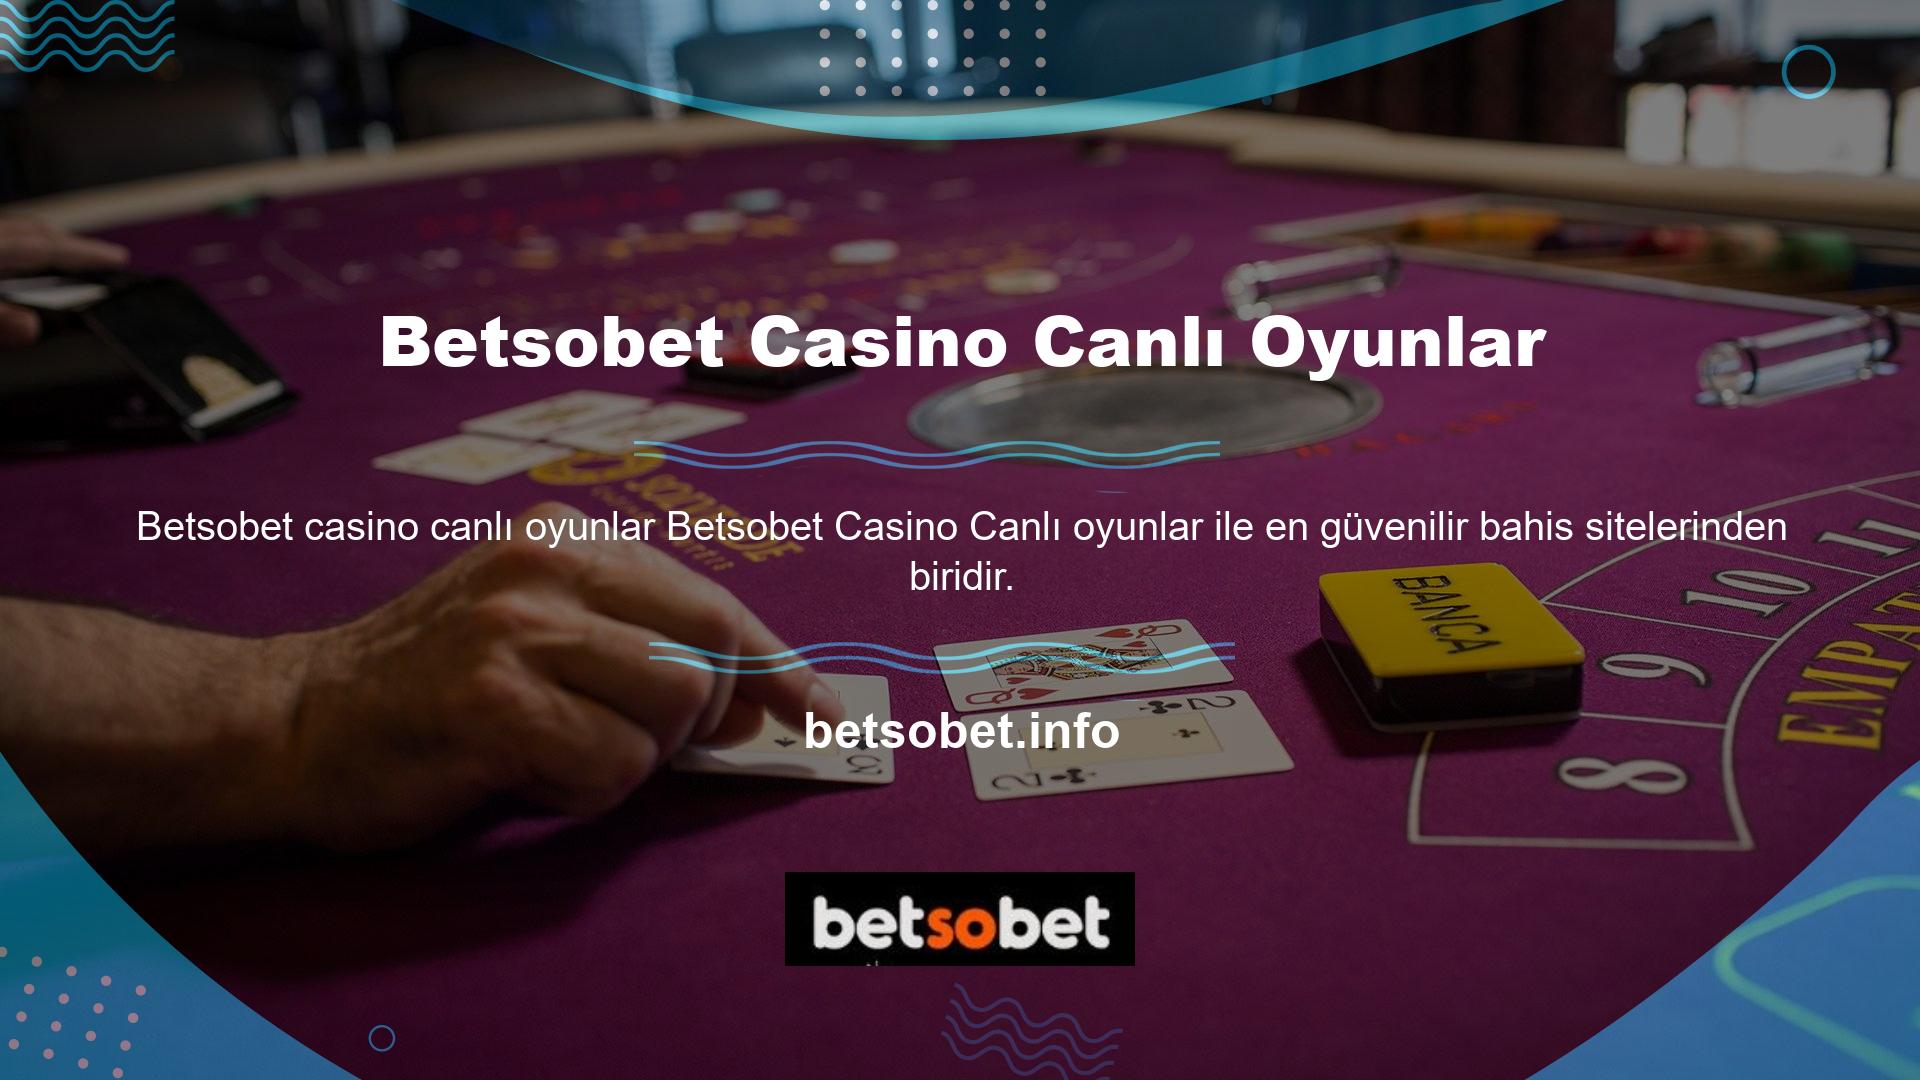 Betsobet, kazançlı poker oyunlarına ek olarak canlı dosyaları güvenle yayınlayabileceğiniz canlı TV özelliğine sahip birkaç siteden biridir